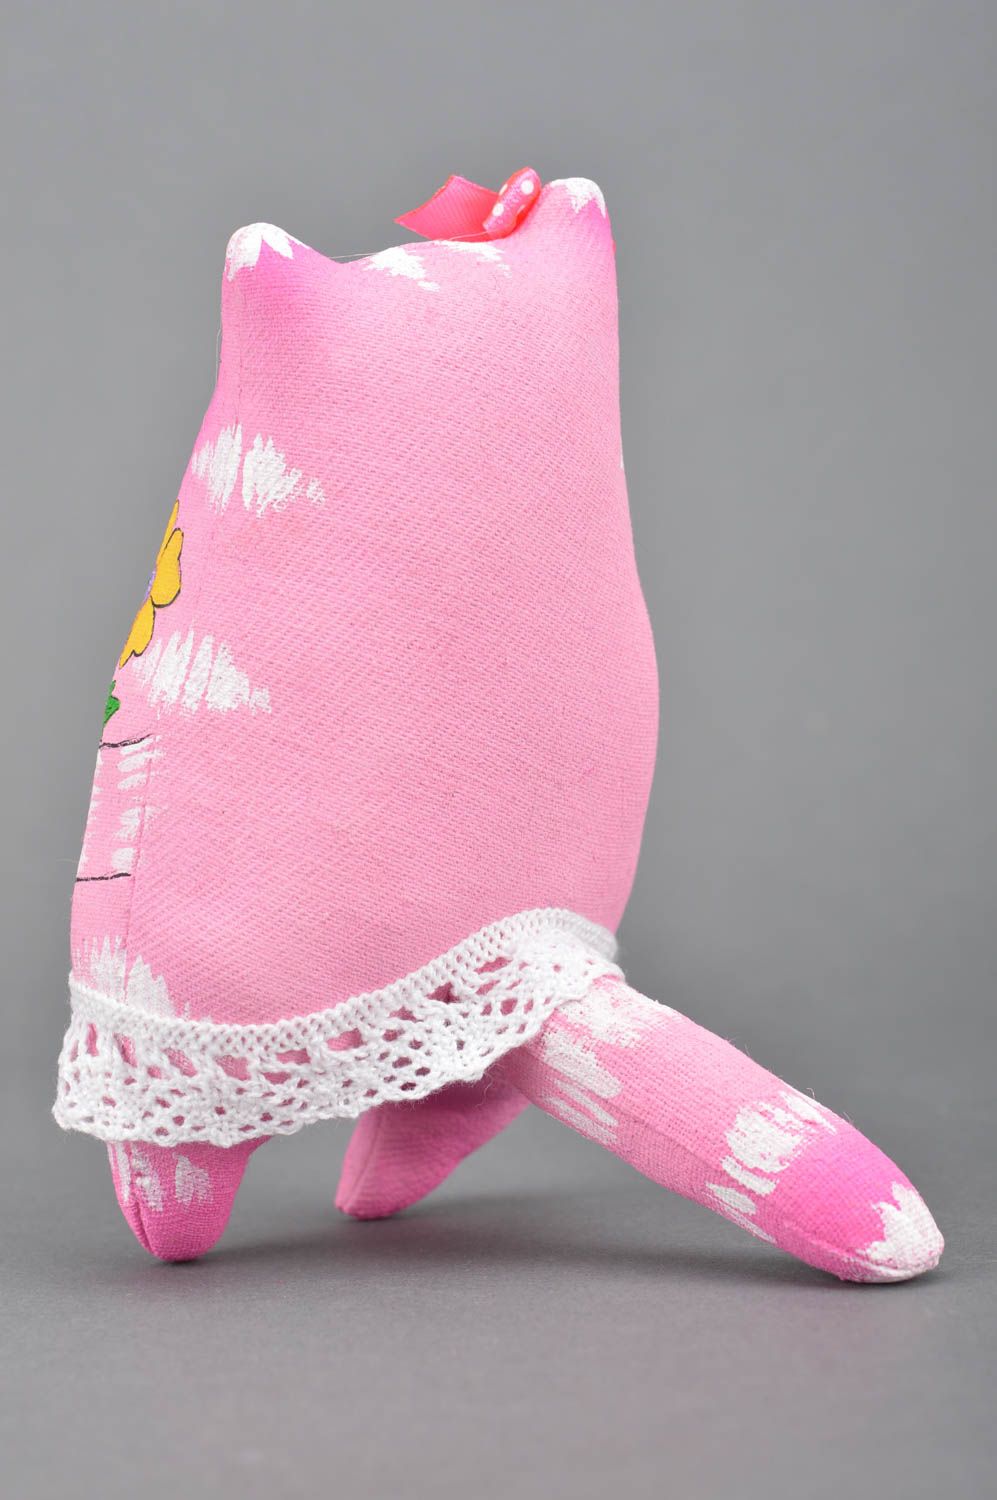 Brinquedo com sabor na forma de um gato rosa de algodão foto 5